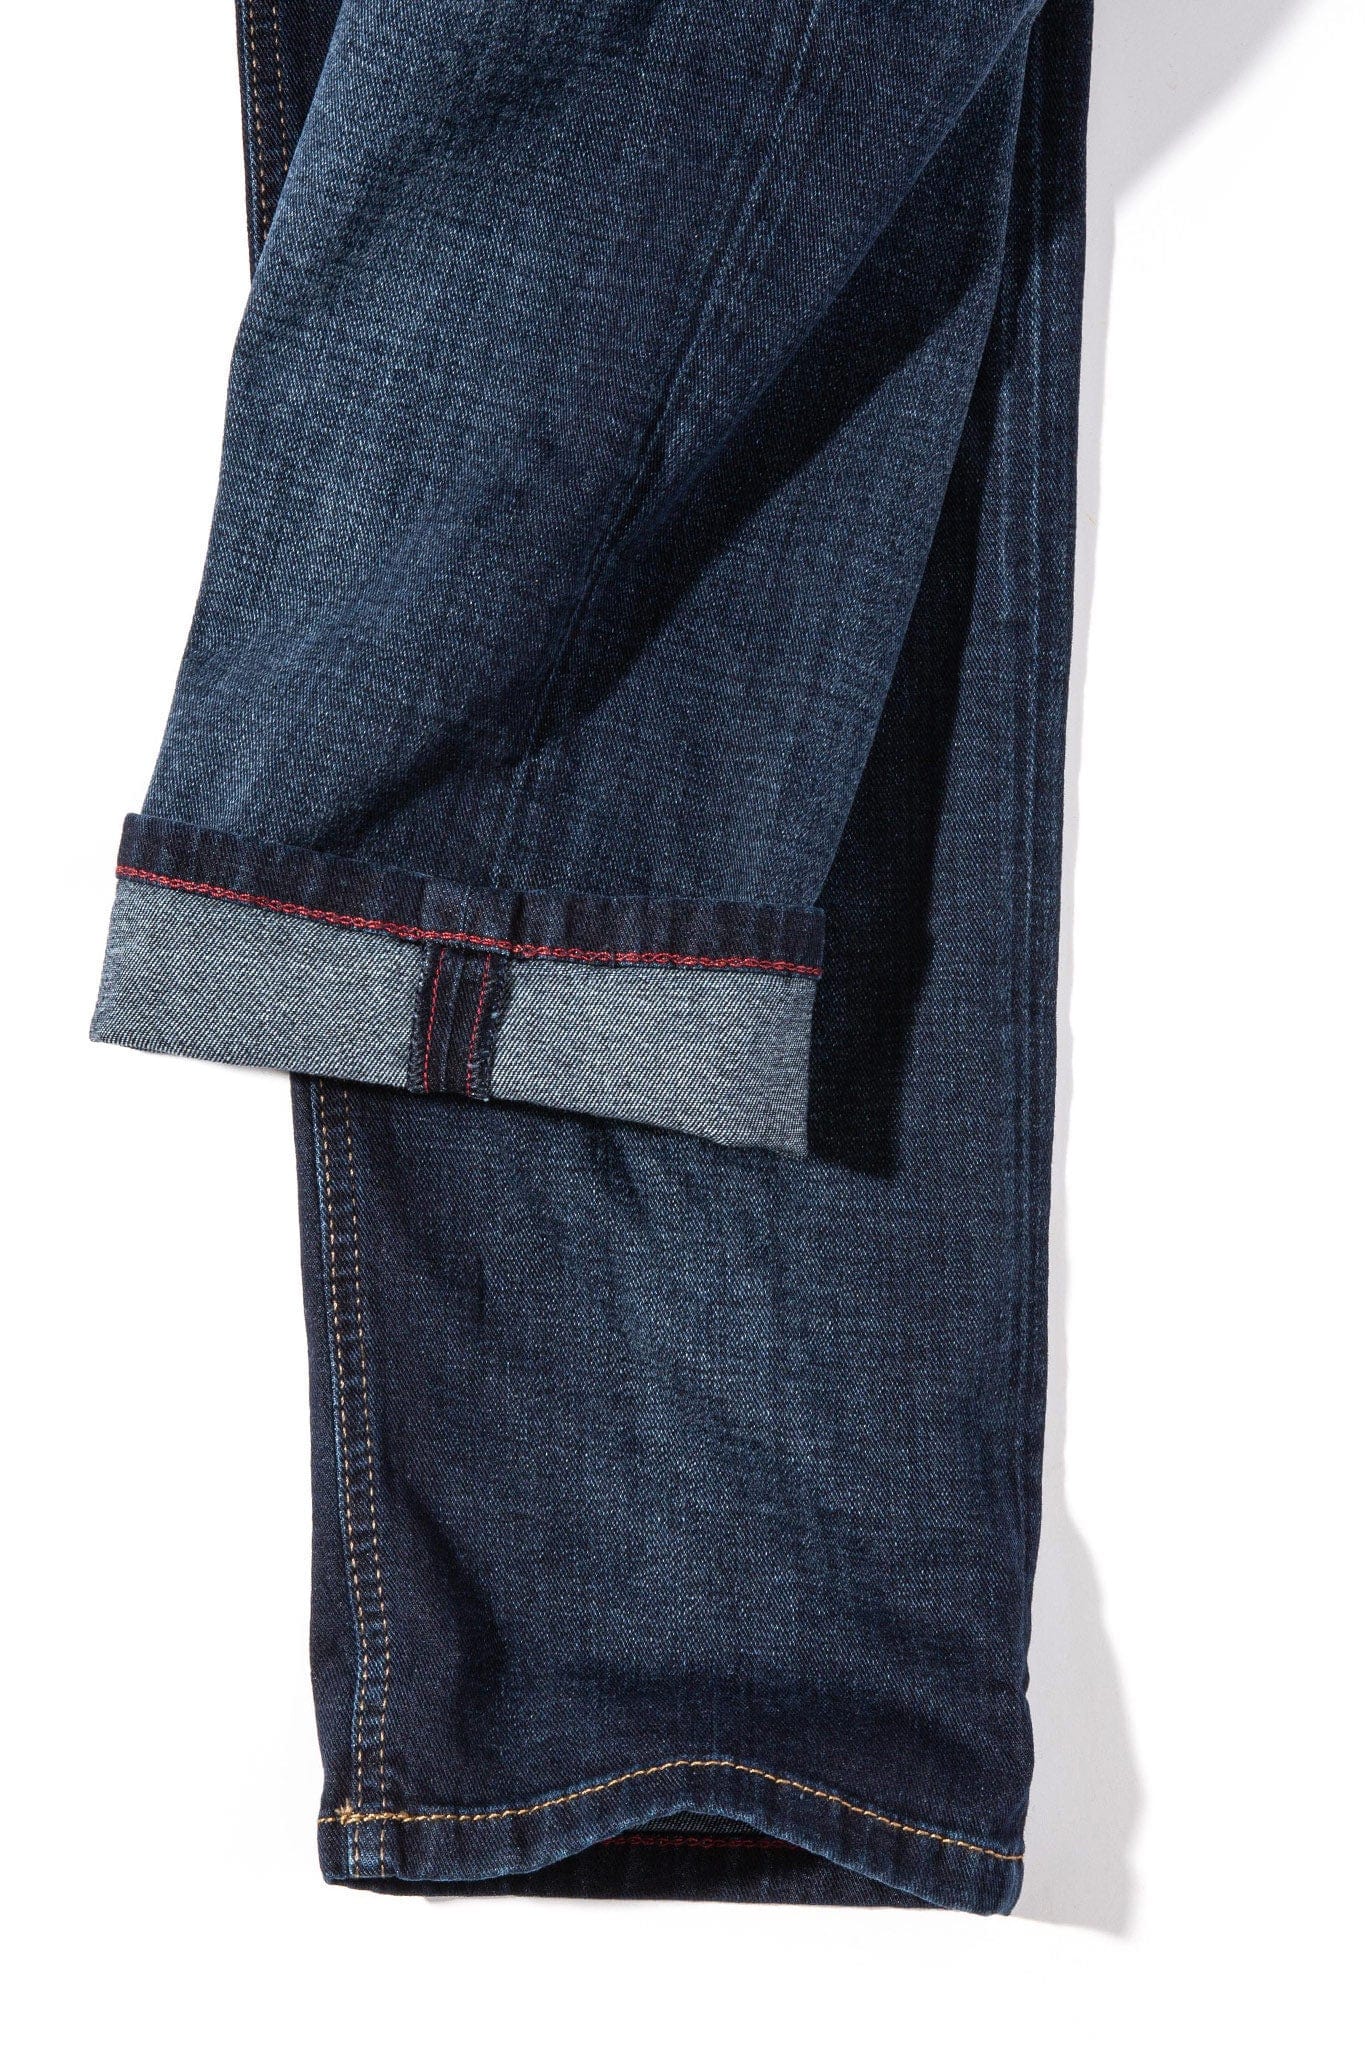 MAC Arne Jeans in Dark Vintage Blue - AXEL'S